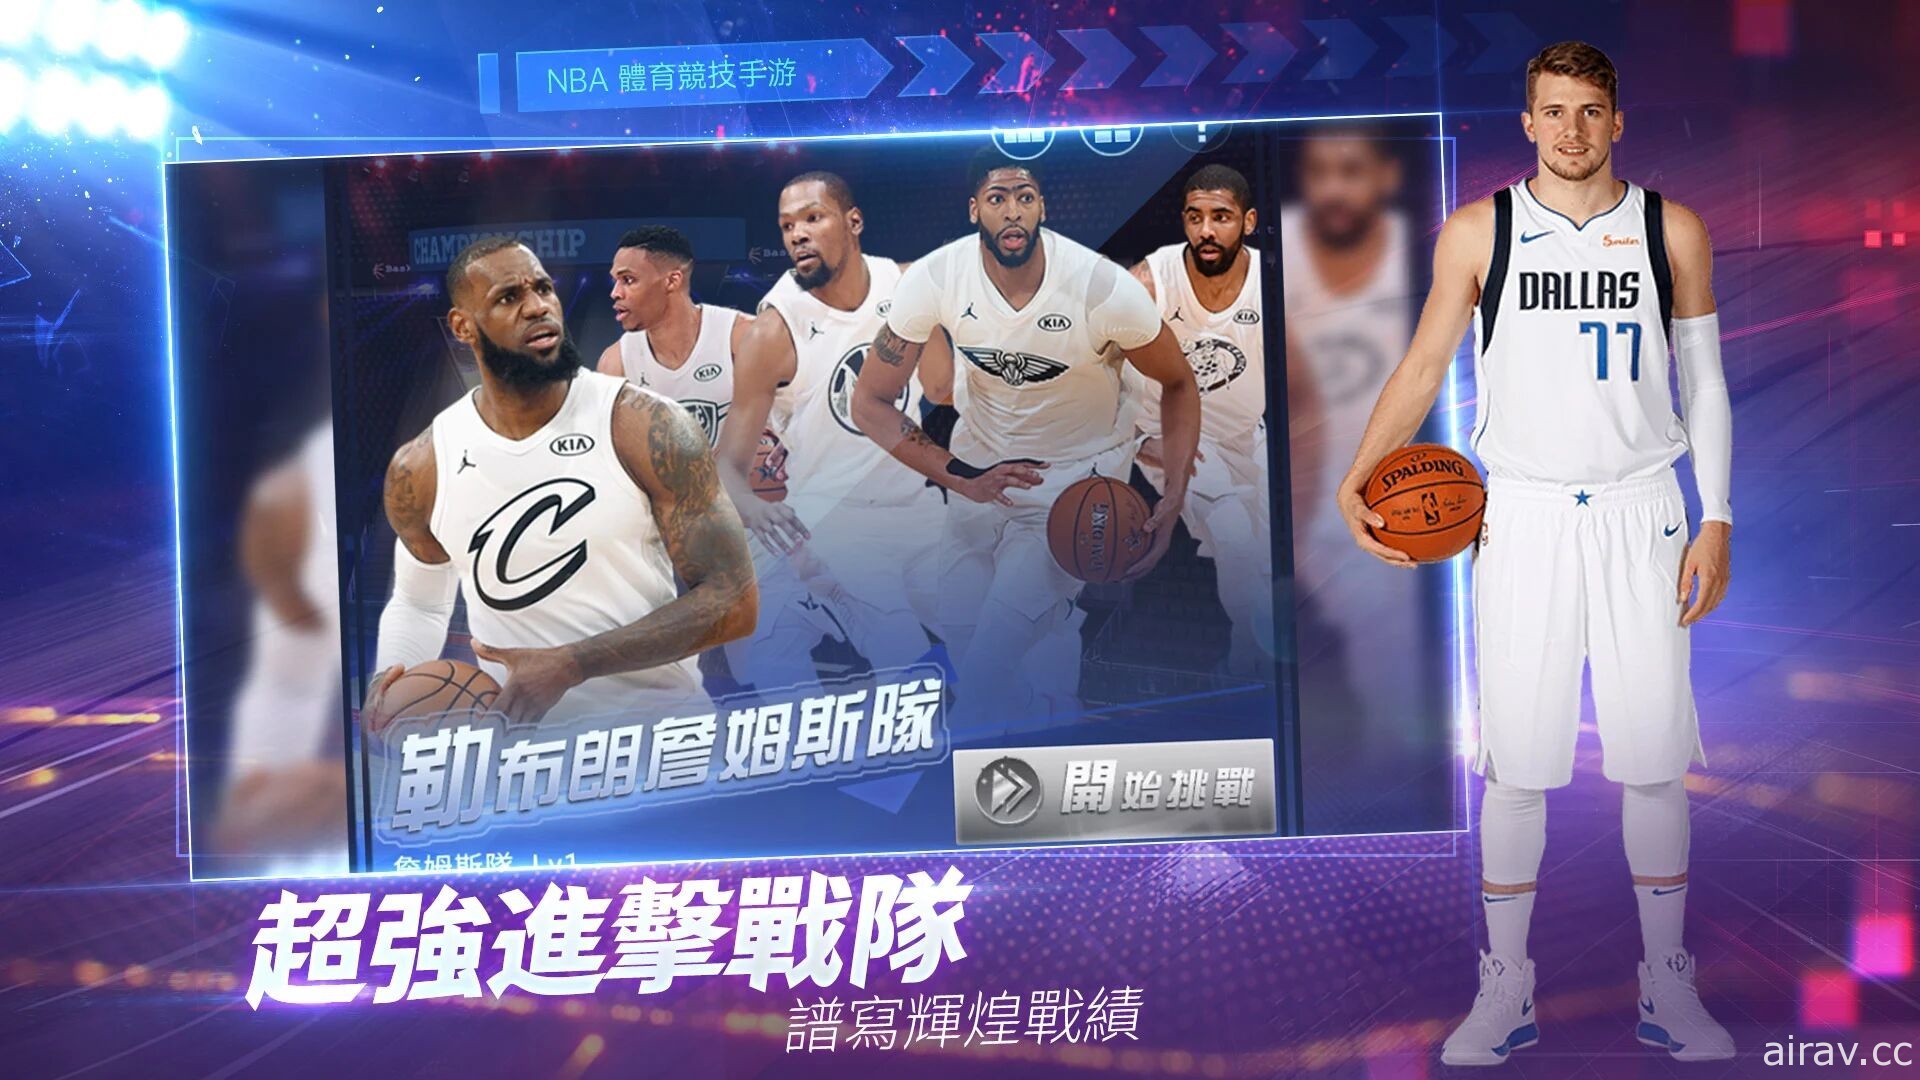 真实篮球模拟游戏《NBA 范特西》今日上市 打造专属梦幻阵容实现总冠军梦想